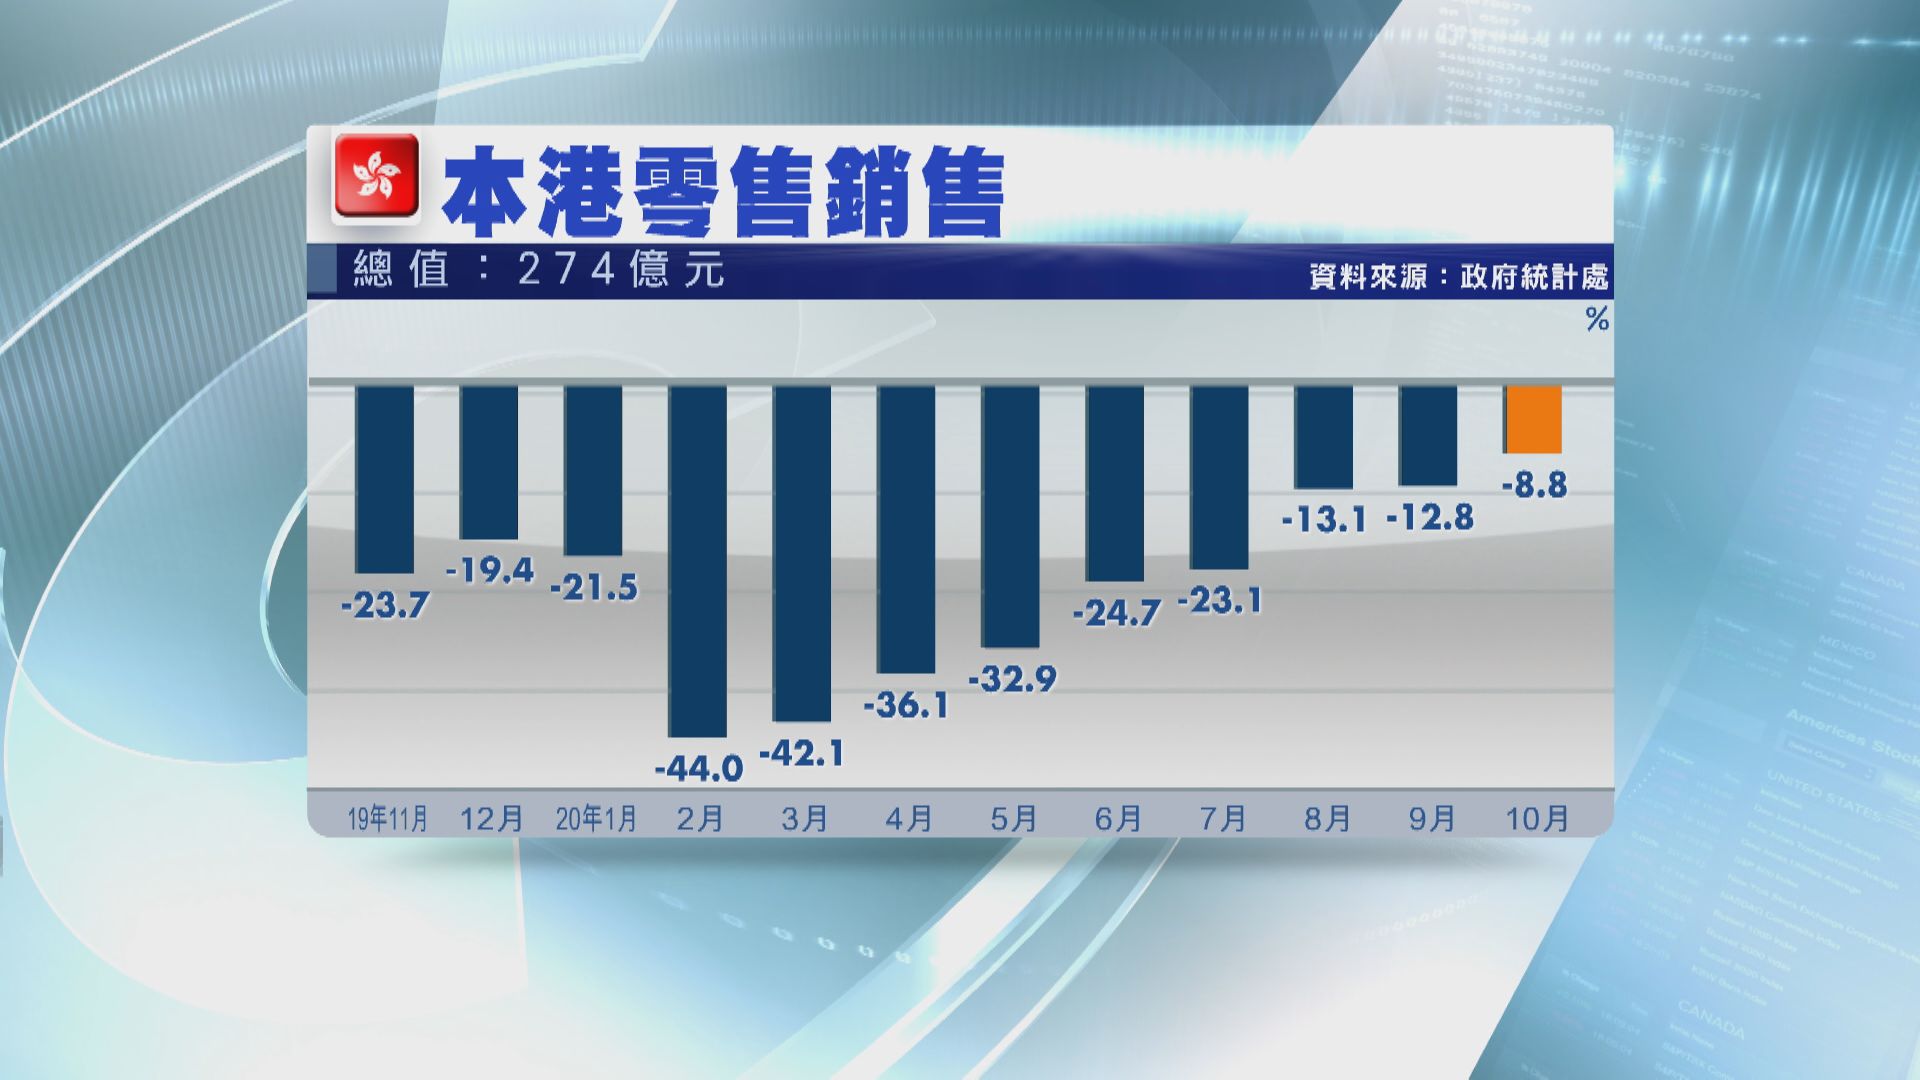 本港10月零售銷售跌幅 收窄至8.8%